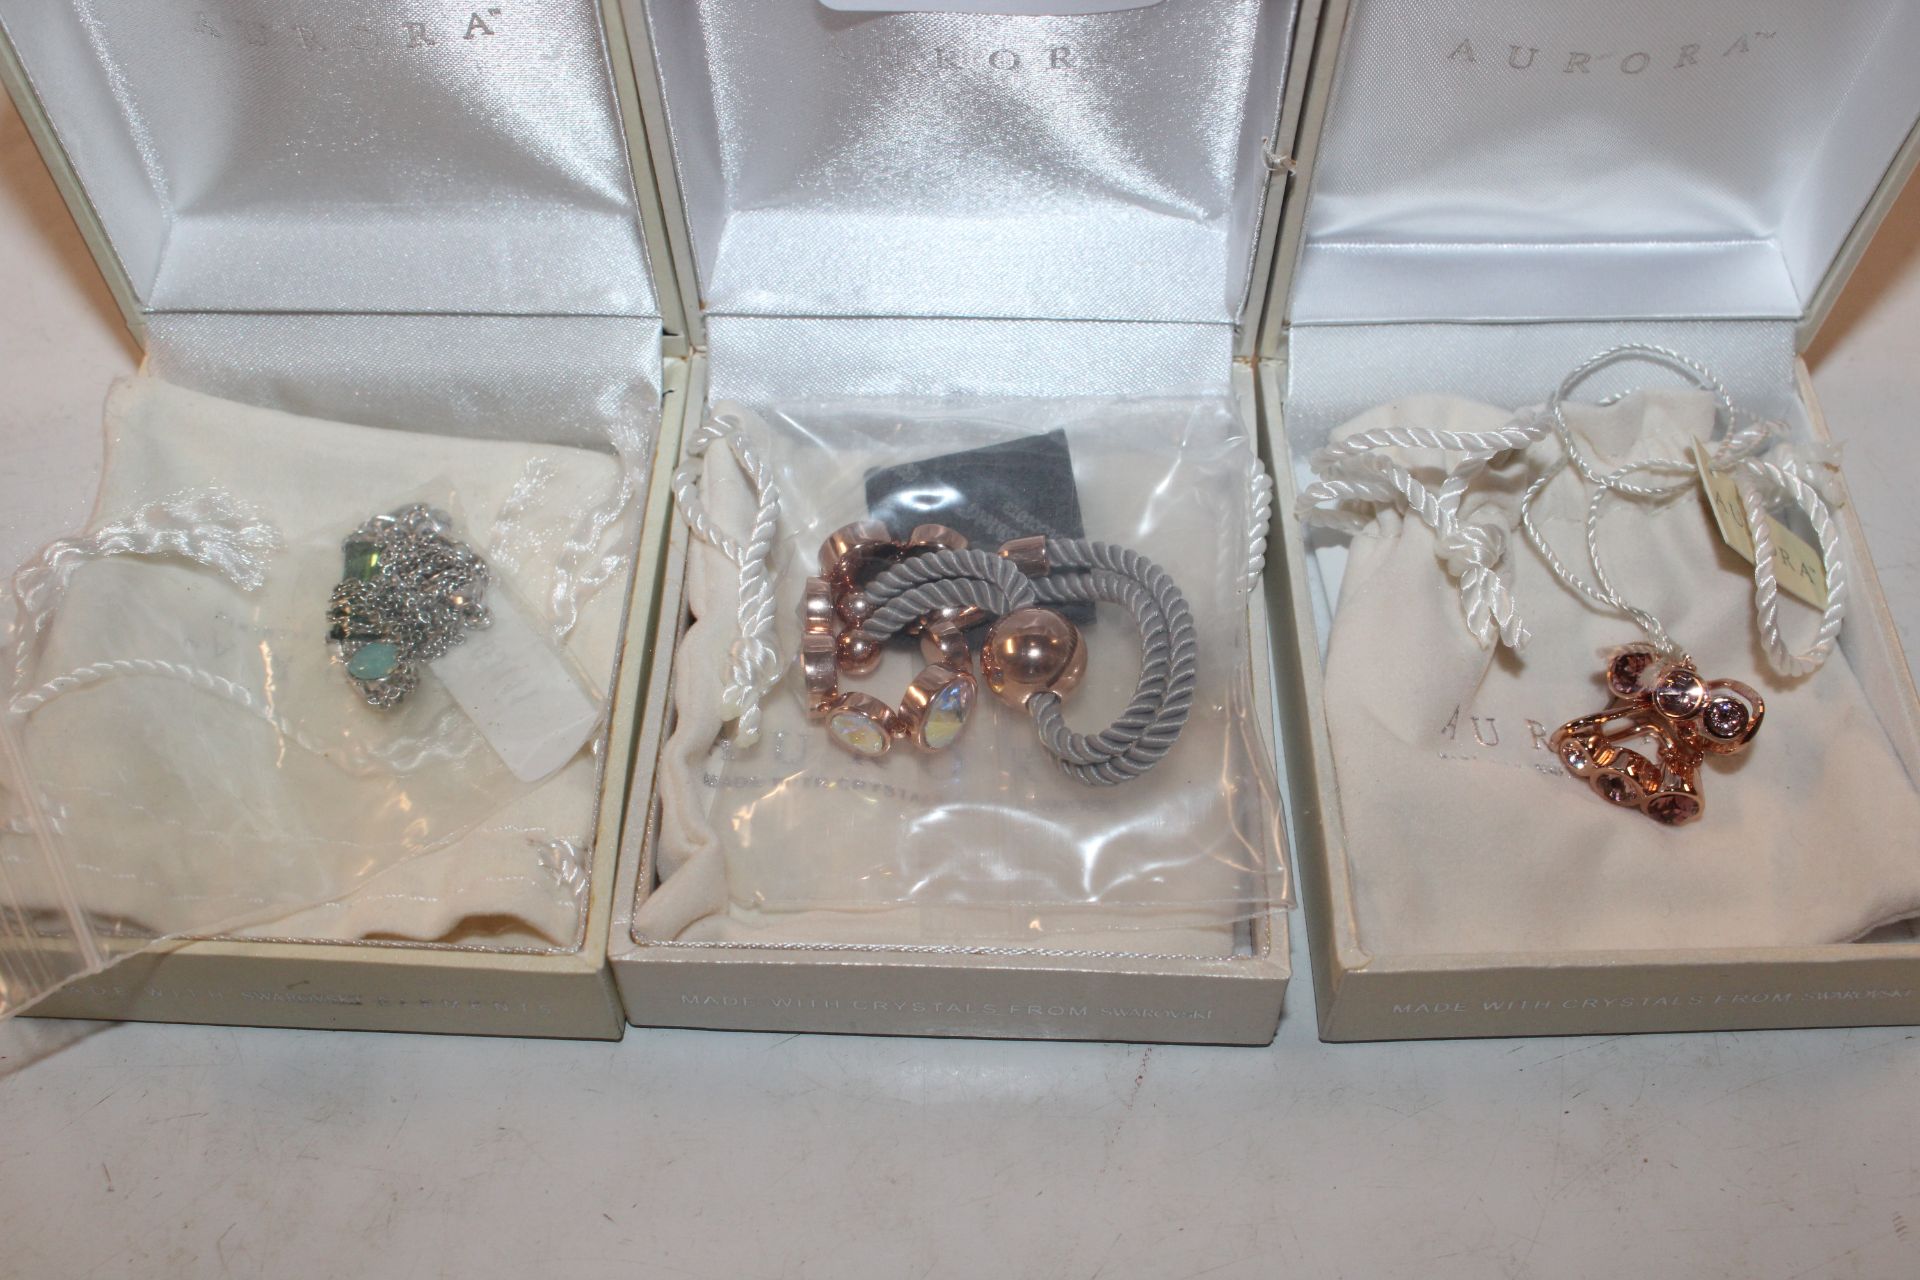 Three boxes containing Swarovski jewellery